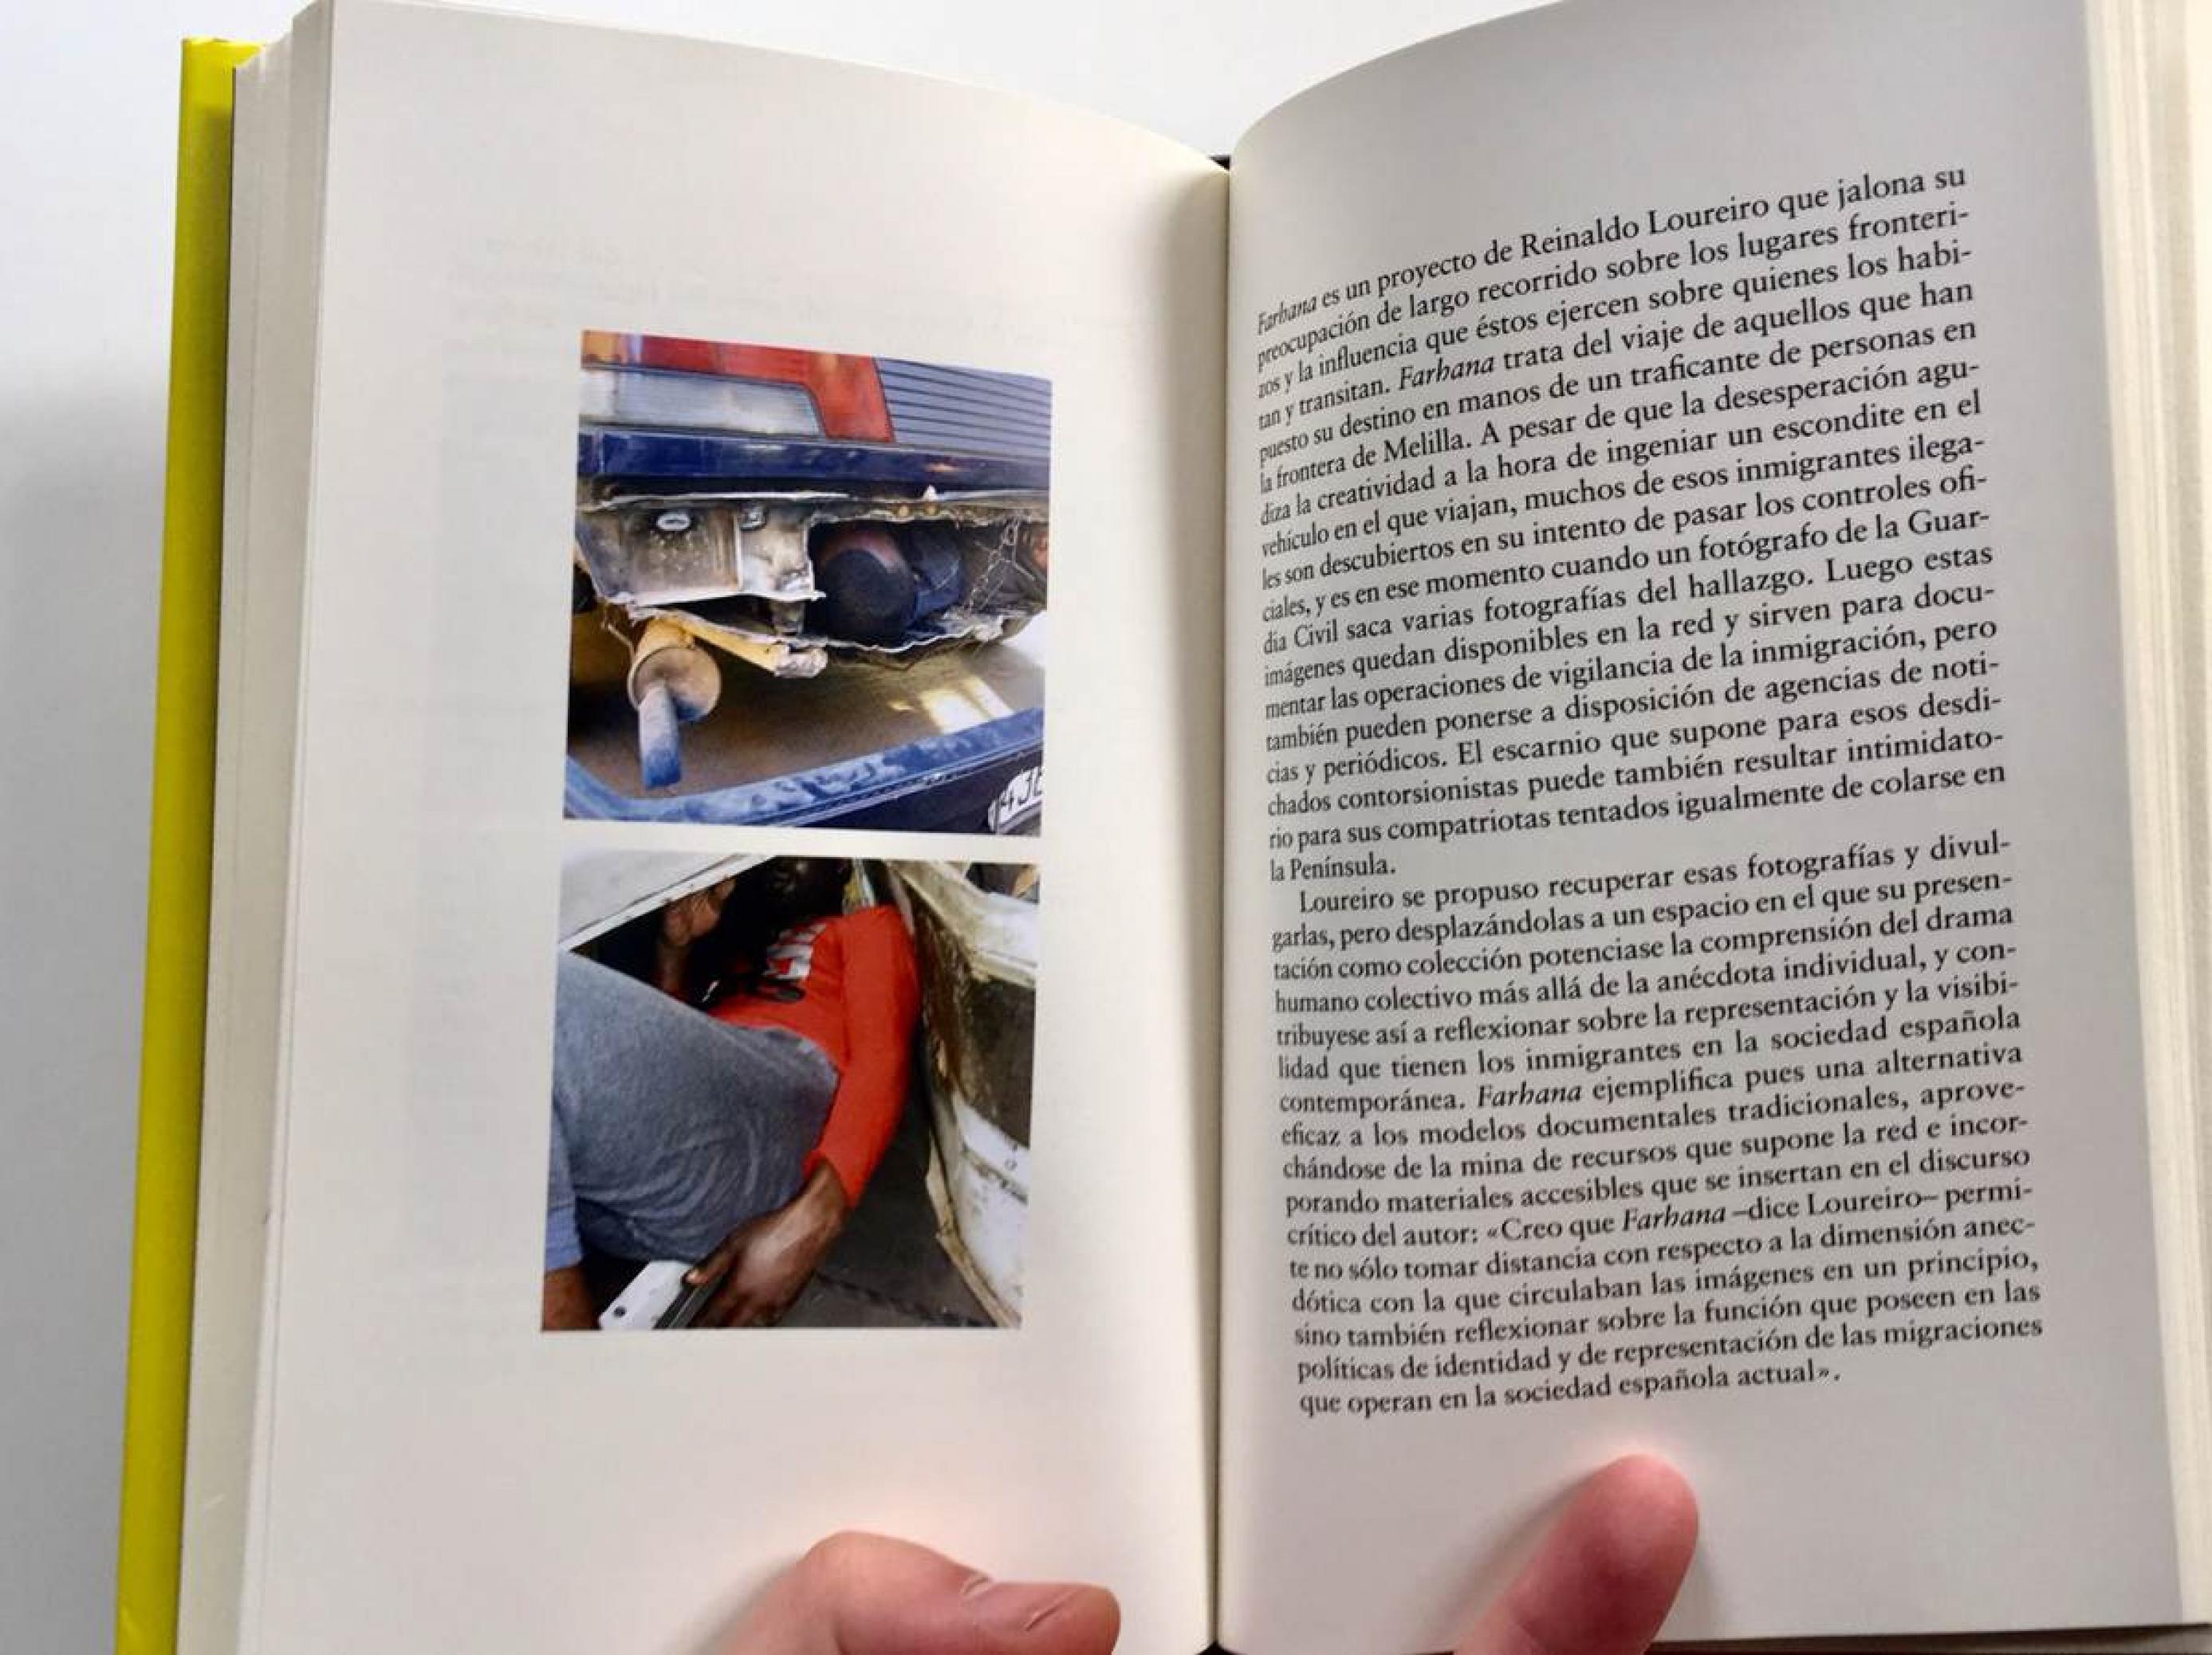 Der Theoretiker und Fotokünstler Joan Fontcuberta erwähnt in seinem Buch "La Furia de las imágenes" den Fotokünstler Reinaldo Loureiro, der Bilder sammelt, die von der spanischen Polizei bei der Untersuchung von LKWs gemacht werden.